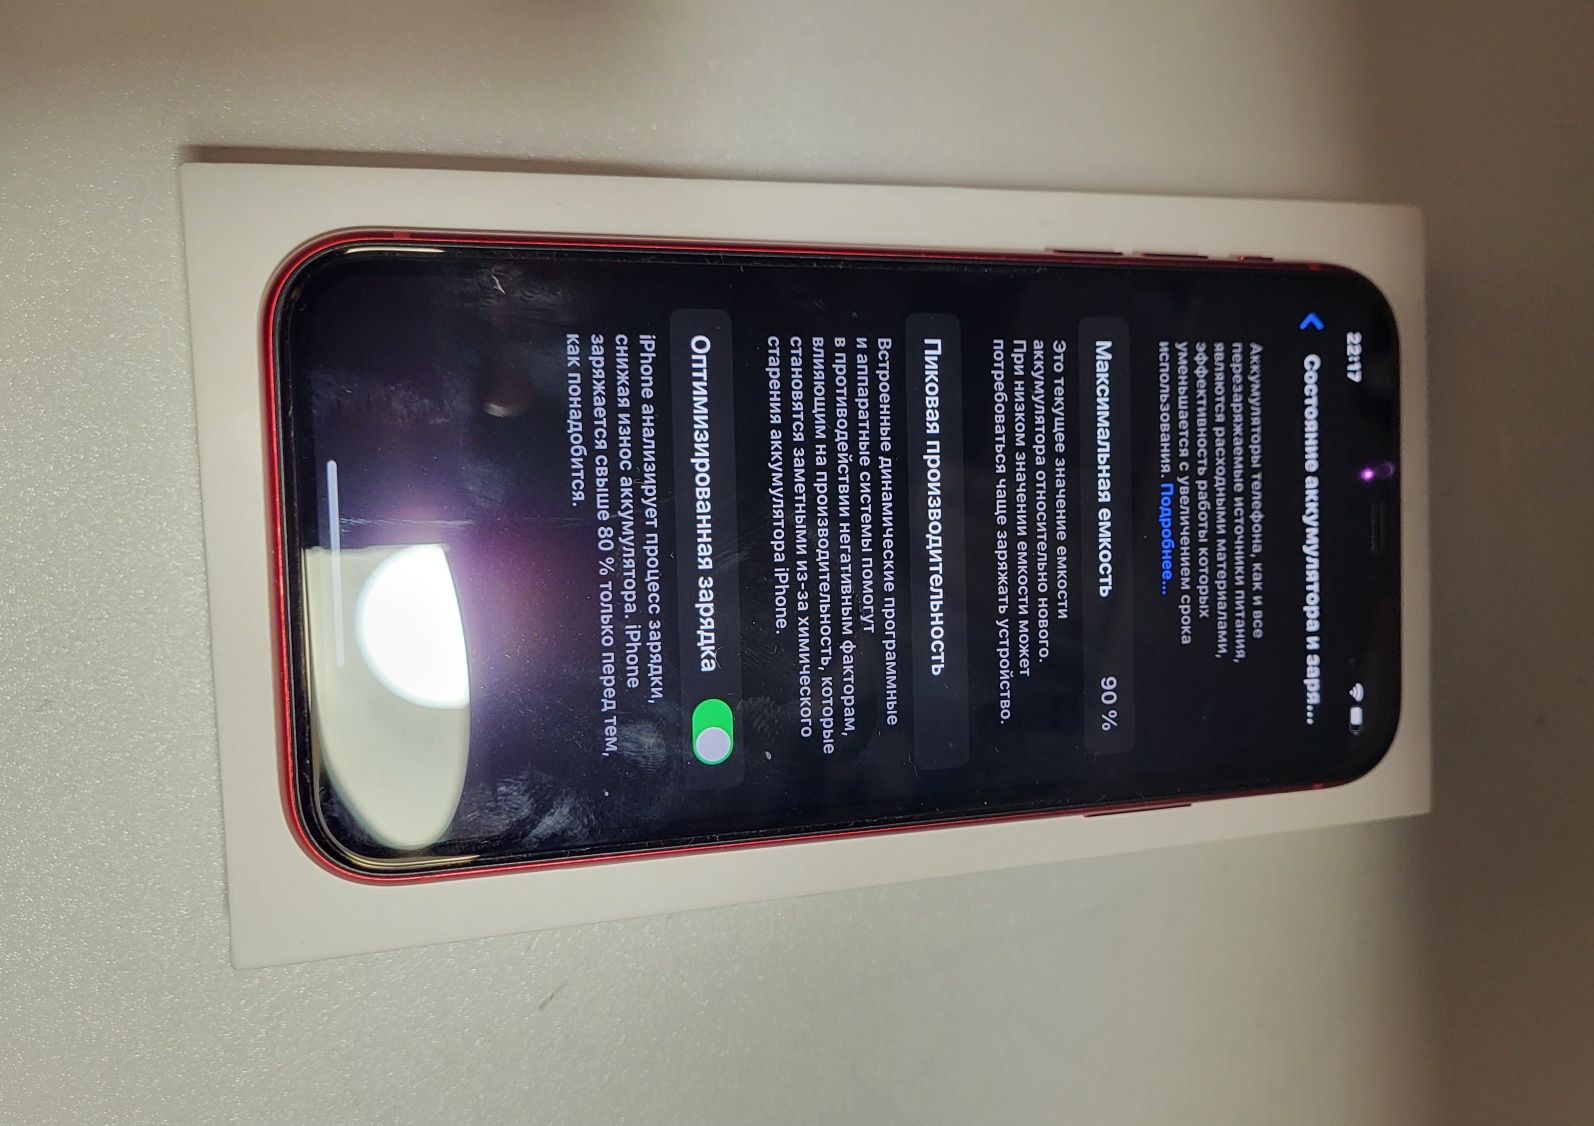 В идеале iPhone 11 64Gb Red Официальный